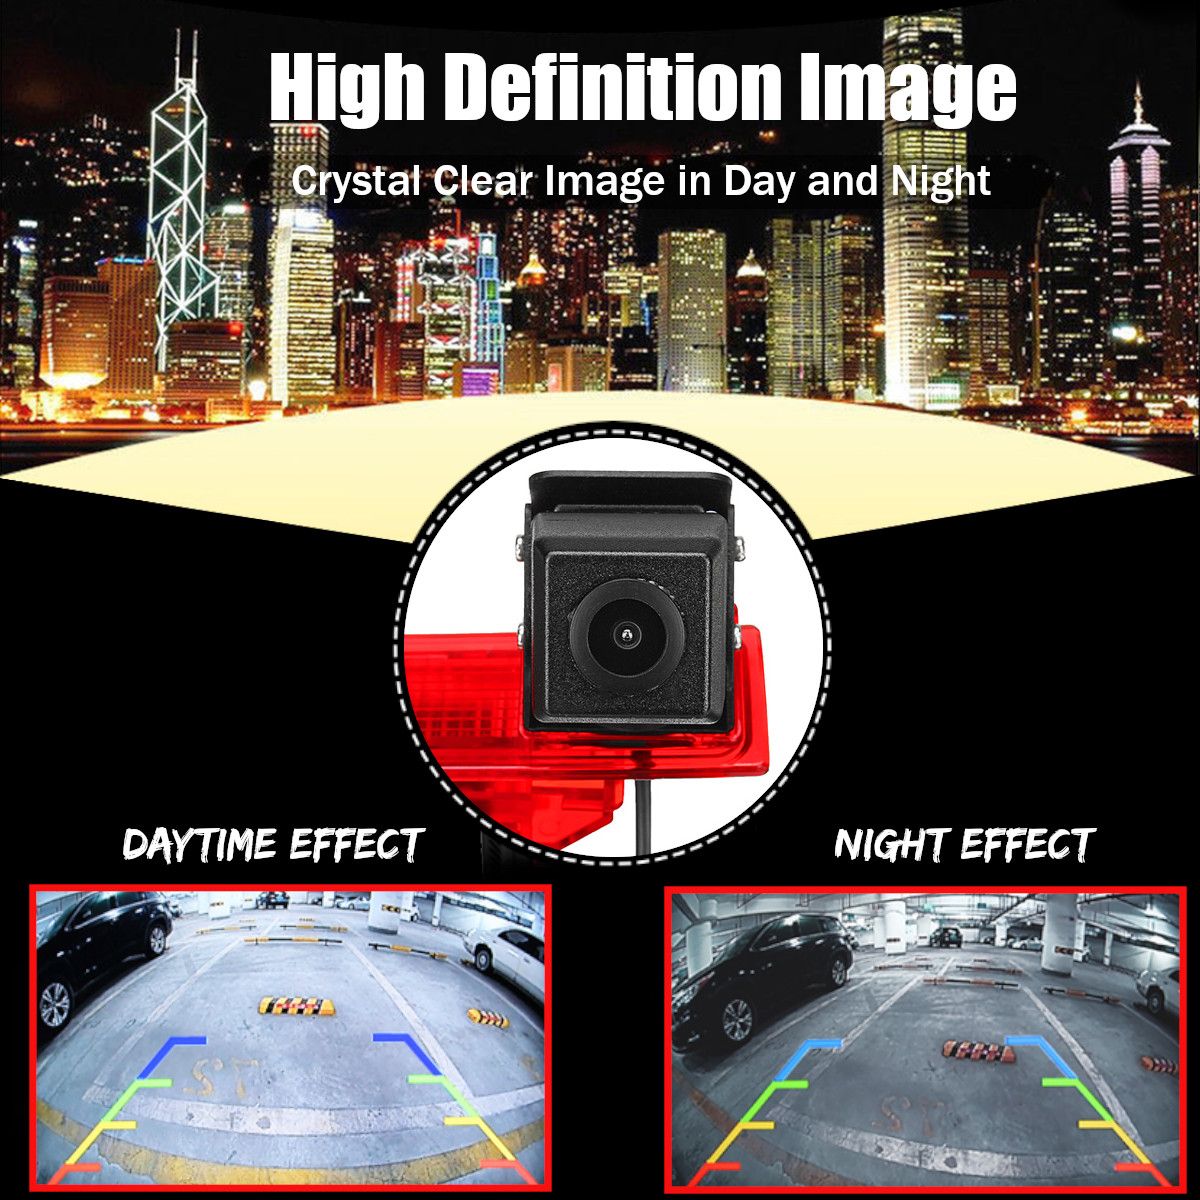 Reversing-Backup-Car-Rear-View-Camera-wBrake-Light-for-VW-Transporter-T5-T6-2010-ON-1341851